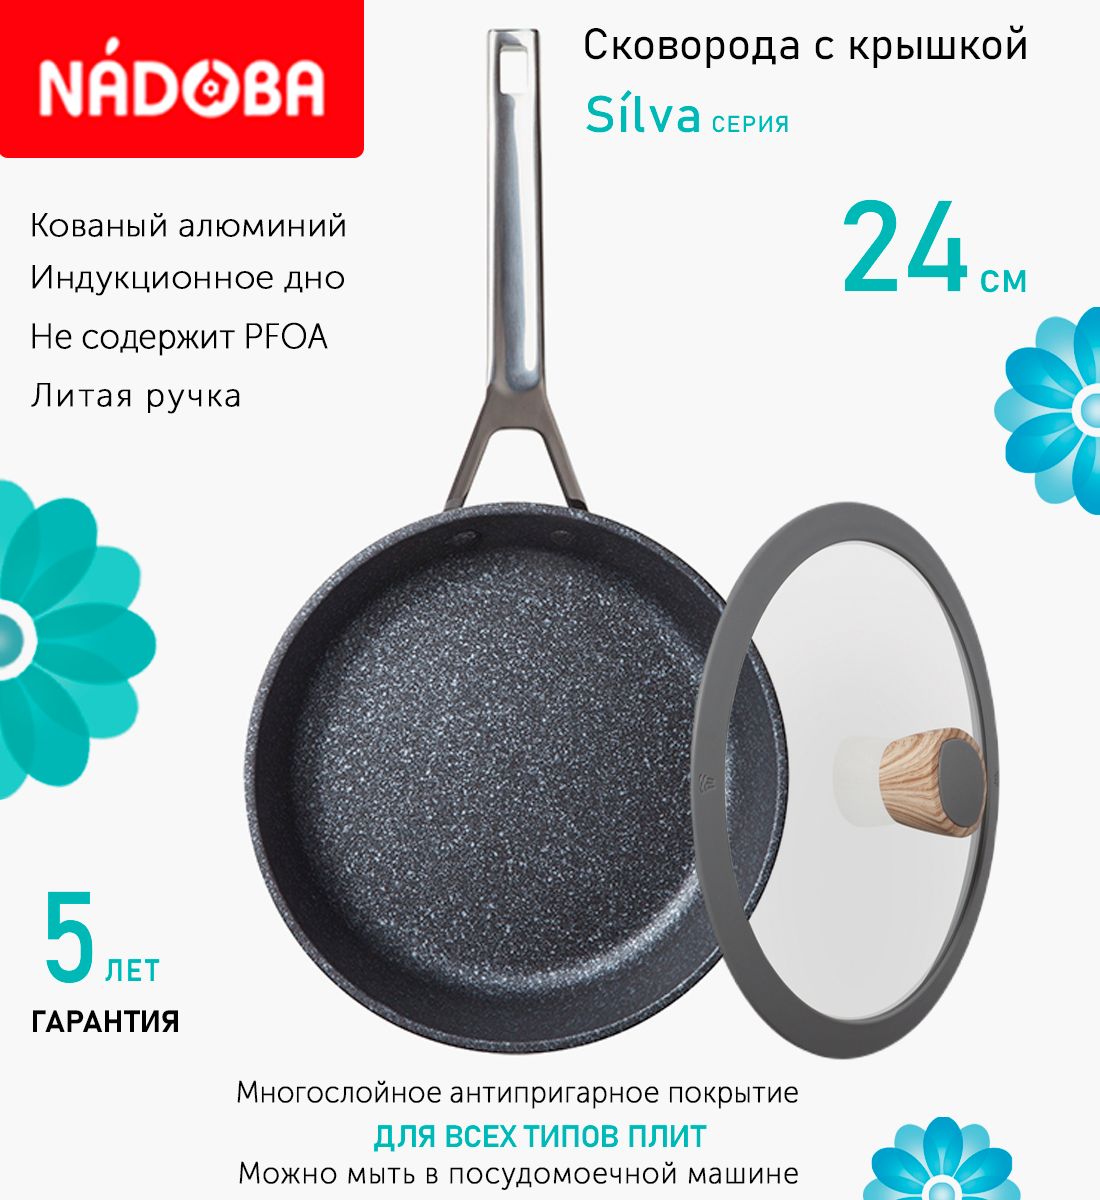 Сковорода с крышкой NADOBA 24 см серия Silva